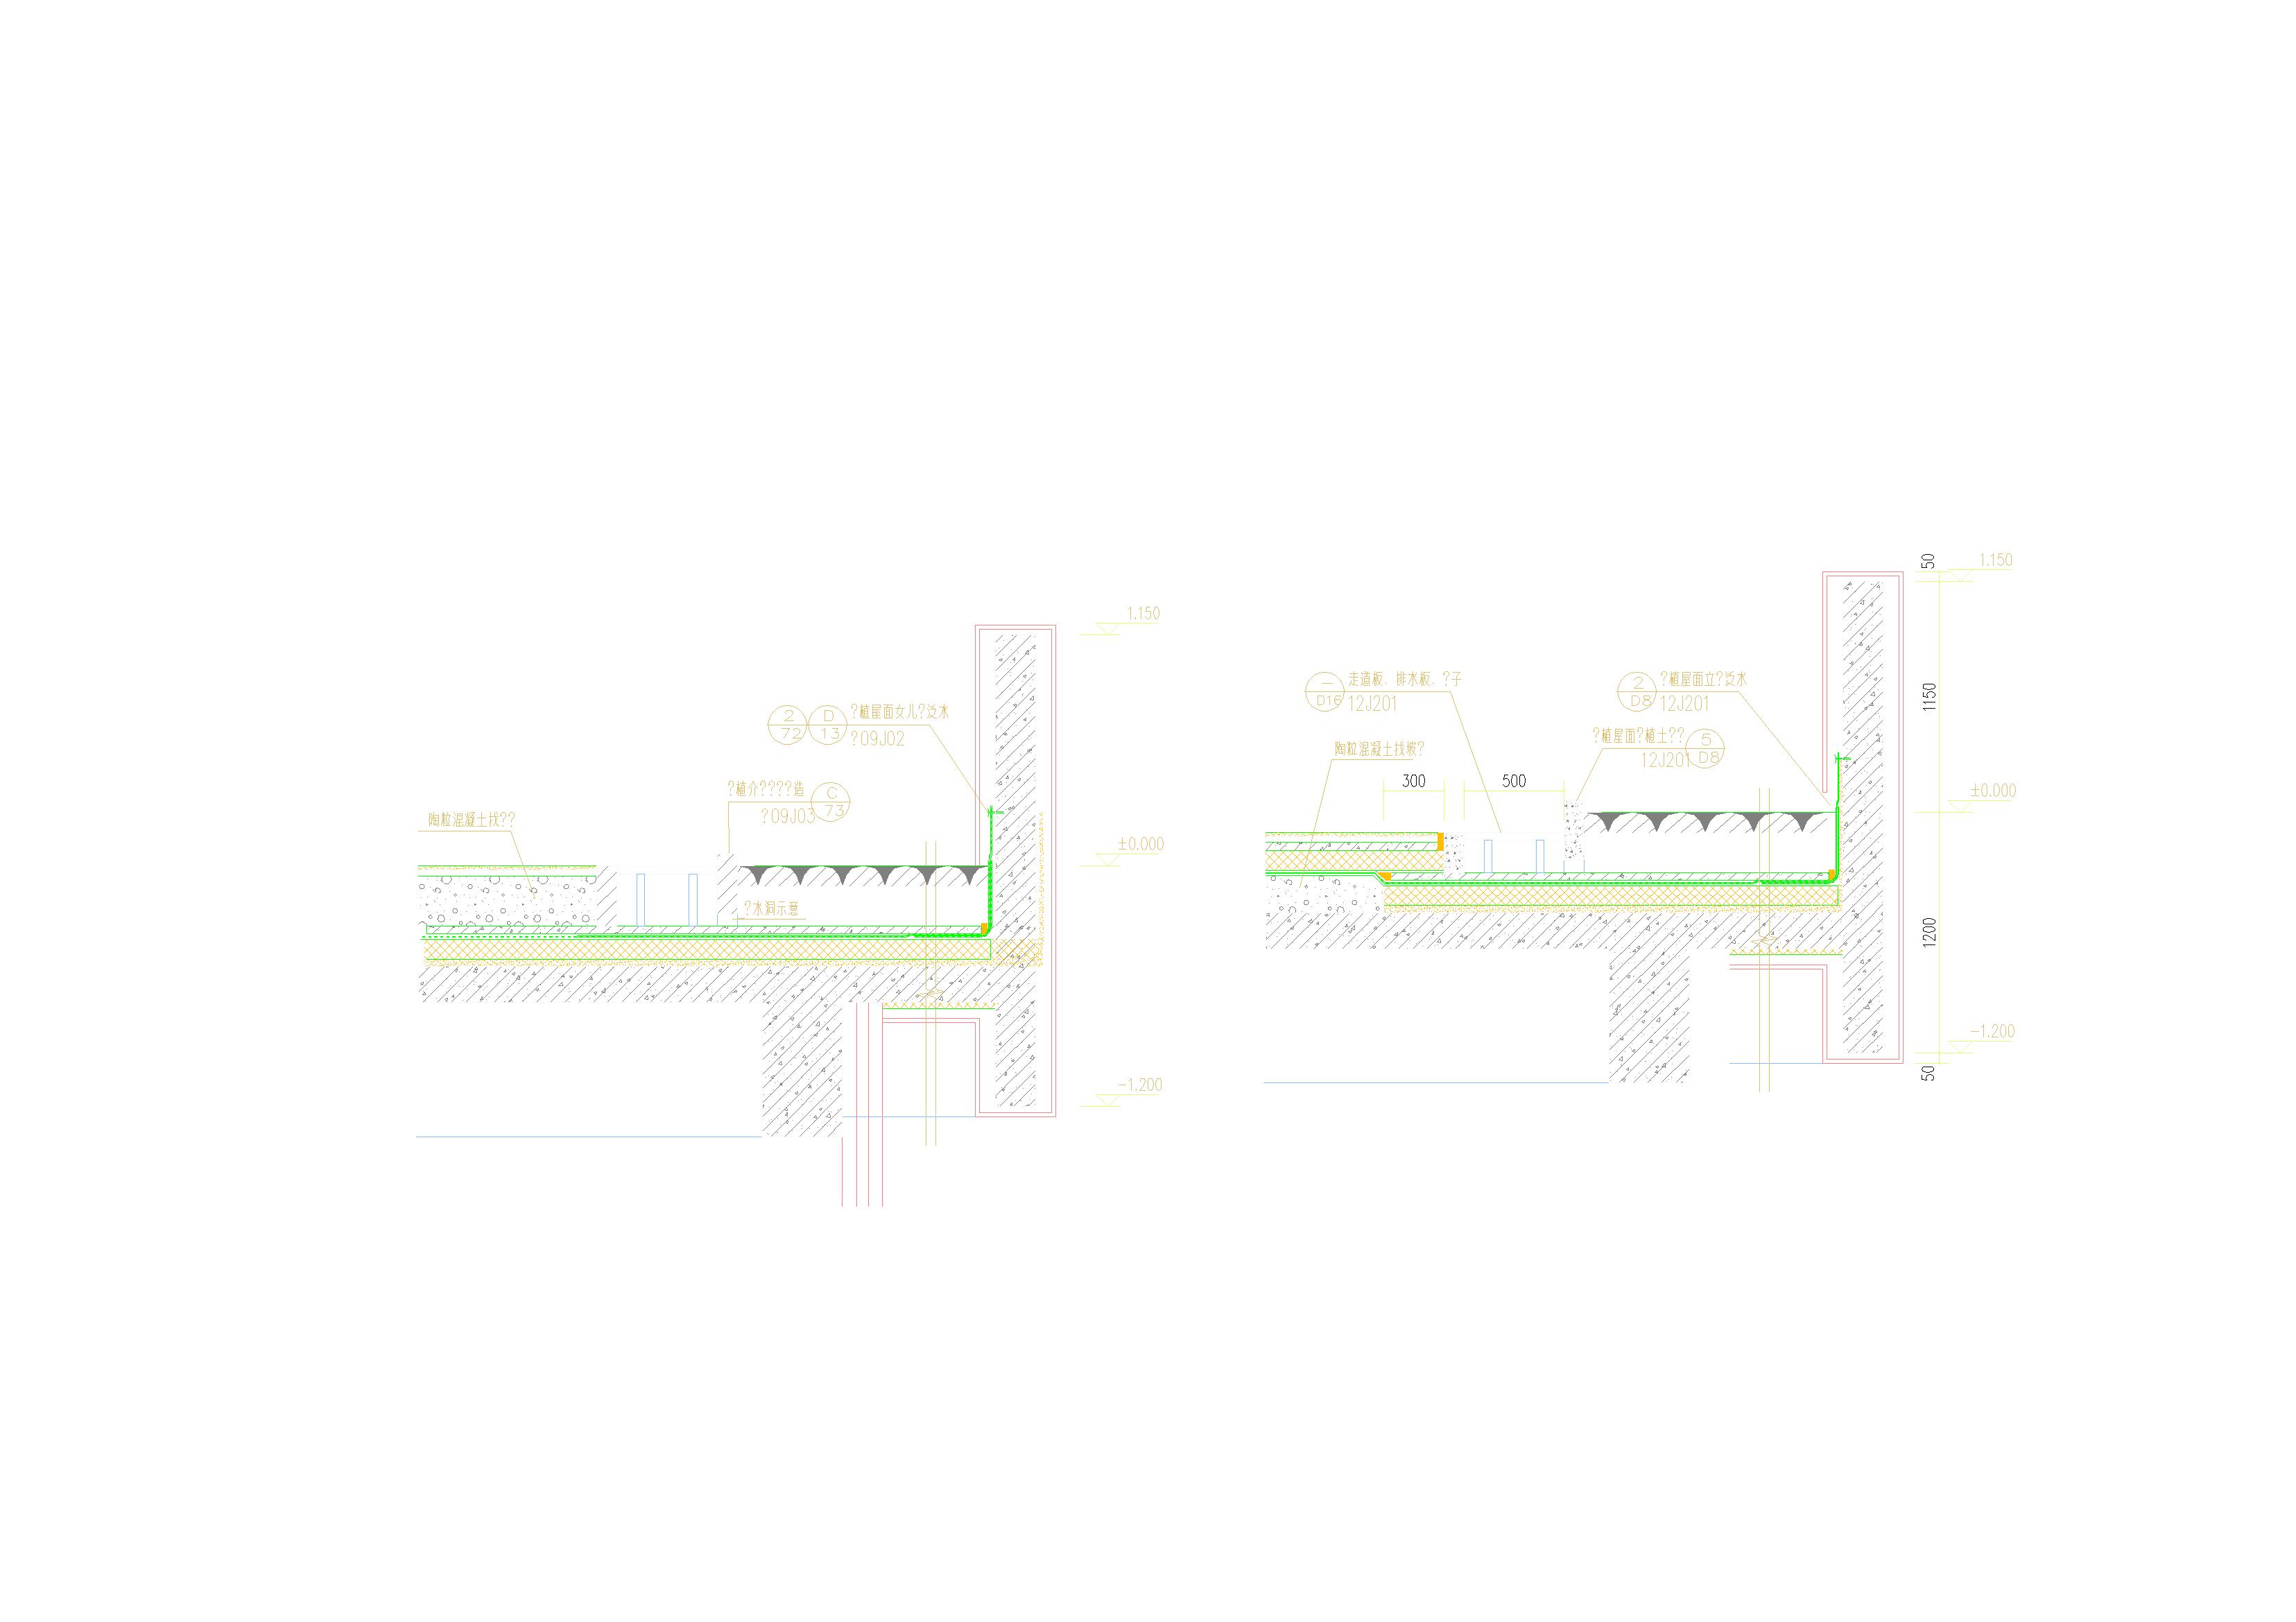 单层网架城市展厅展馆建筑结构水暖电设计施工图